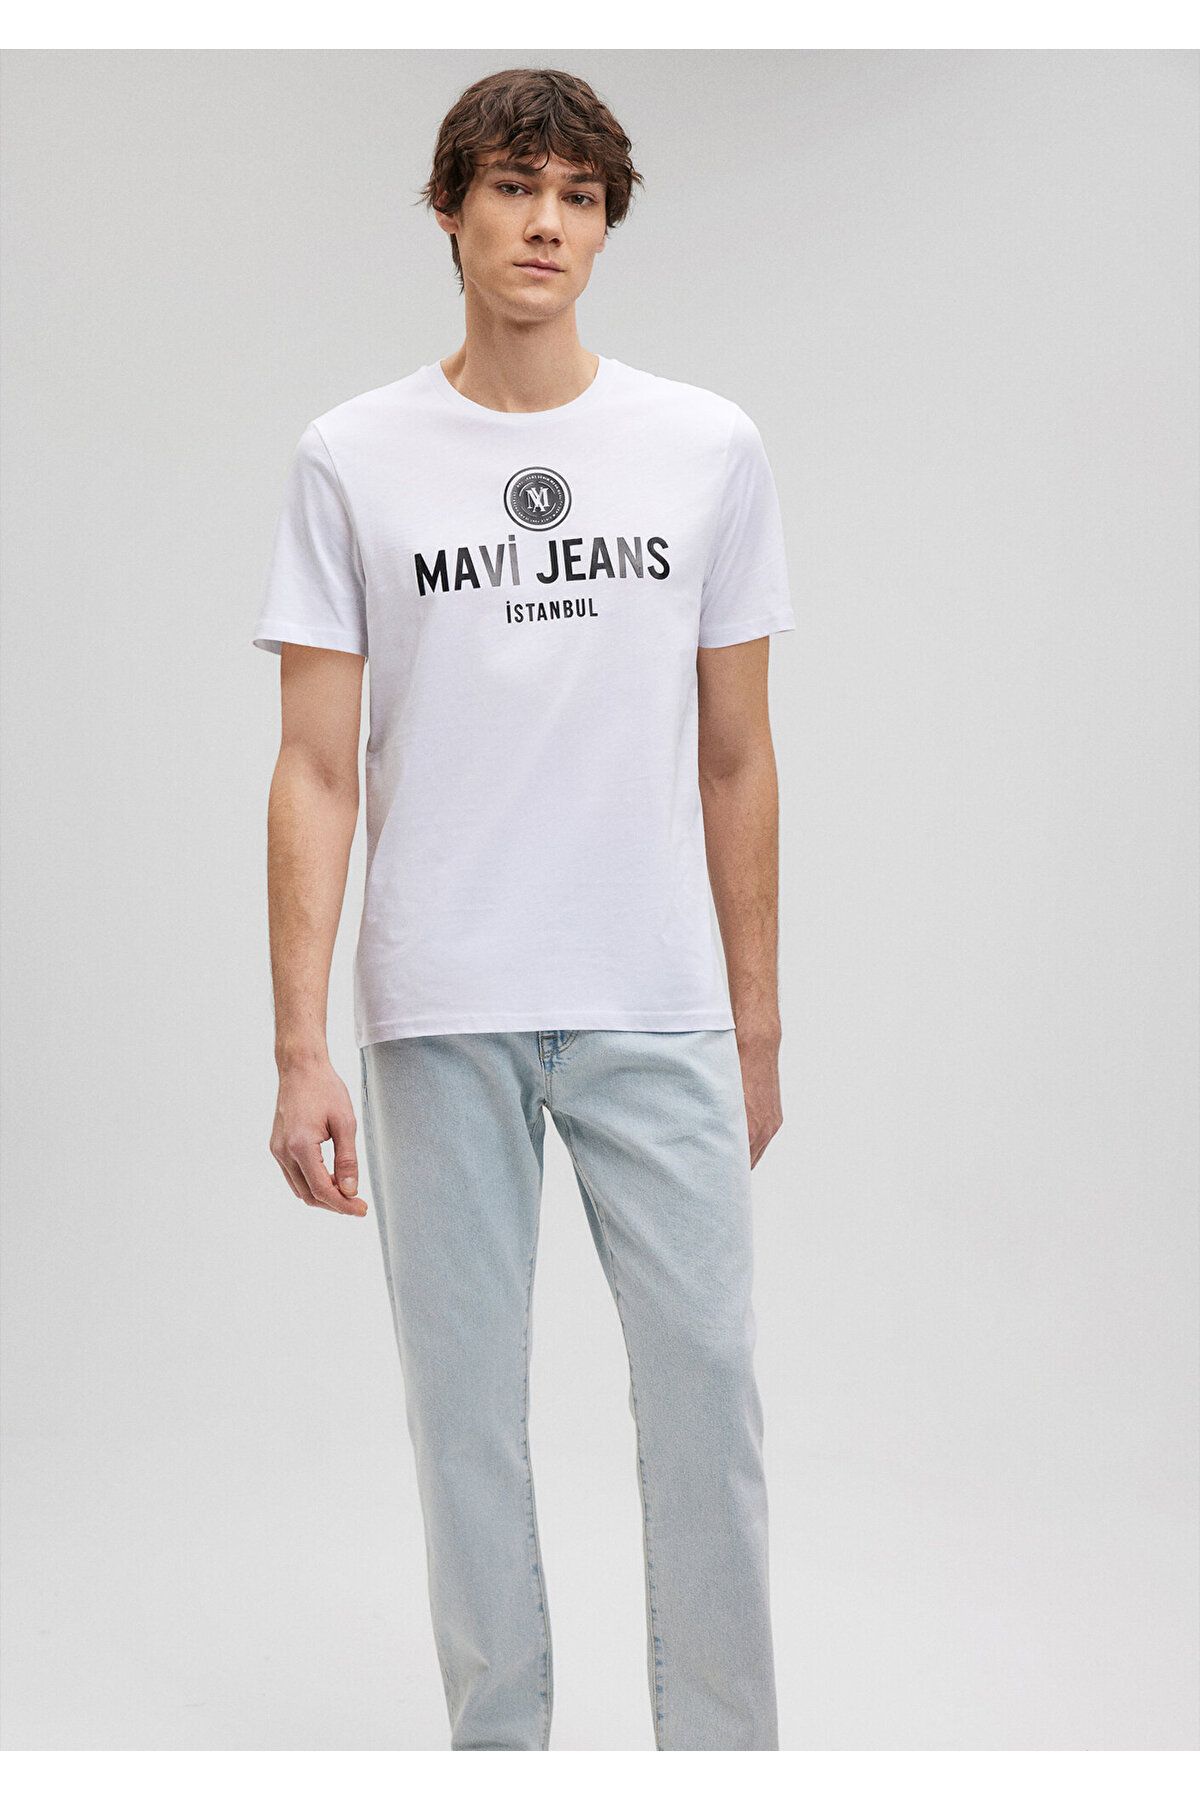 Mavi Jeans Baskılı Beyaz Tişört Slim Fit / Dar Kesim 066195-620